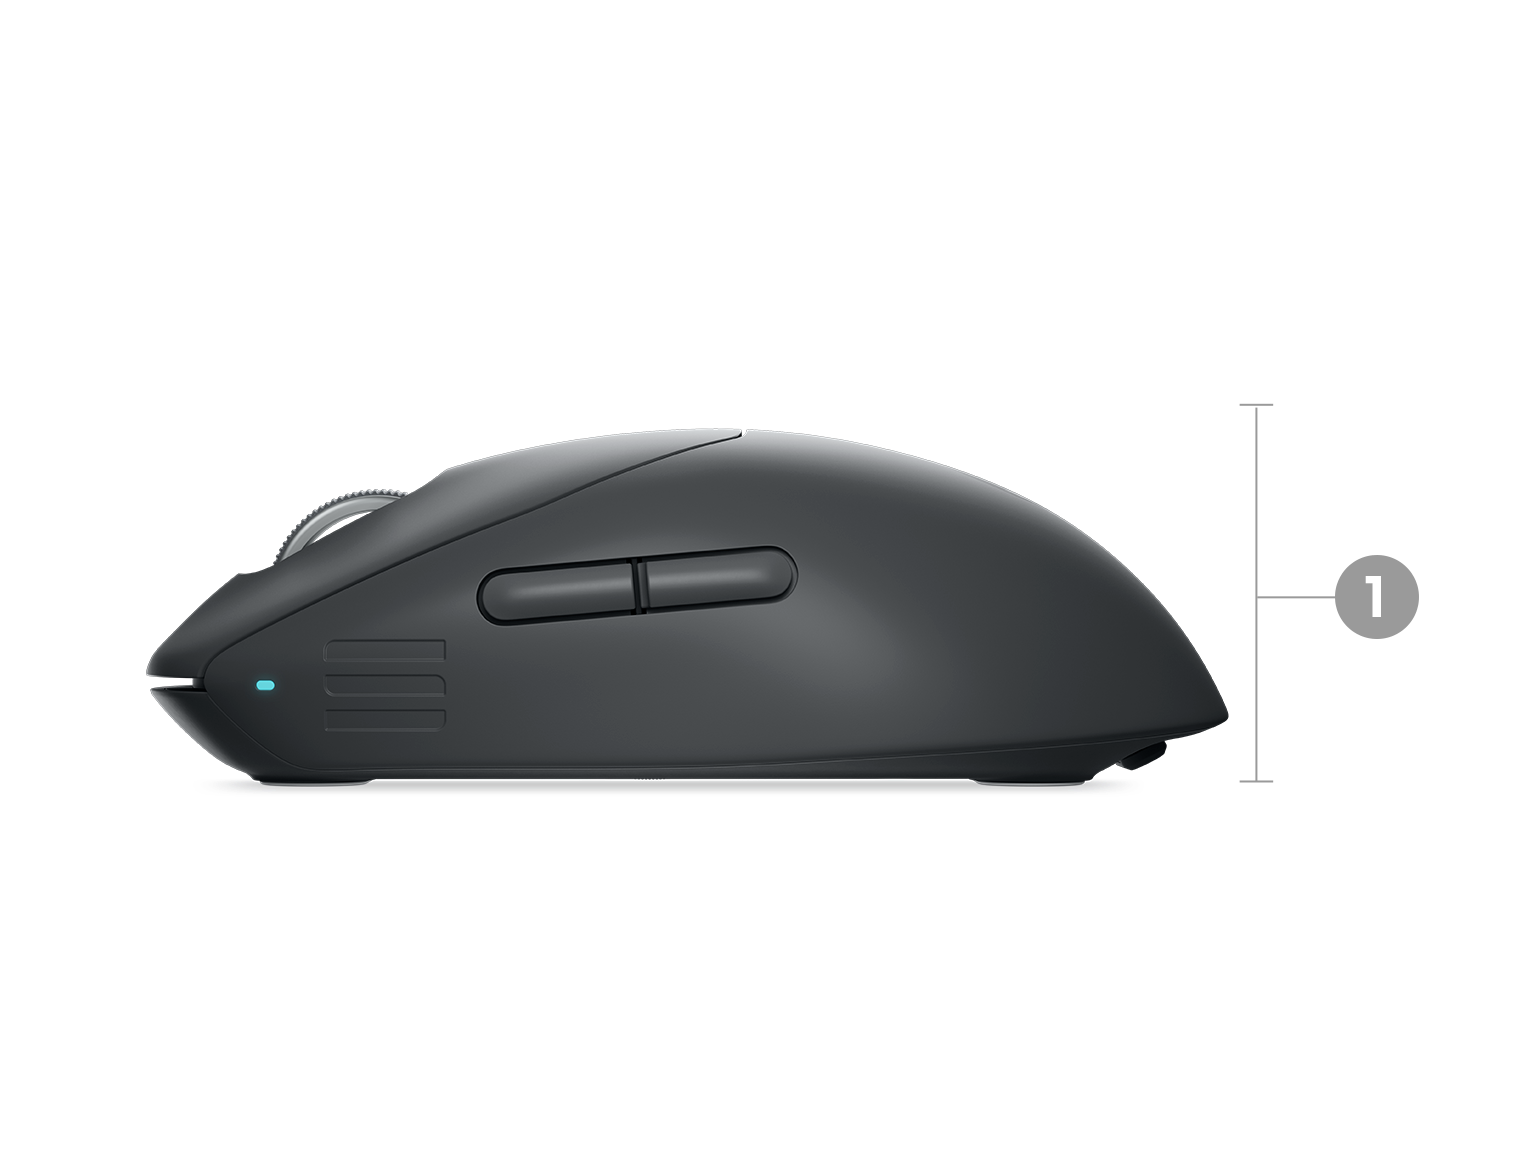 Dell Alienware Pro 遊戲專用無線滑鼠，同時以數字 1 至 3 標示產品尺寸和重量。